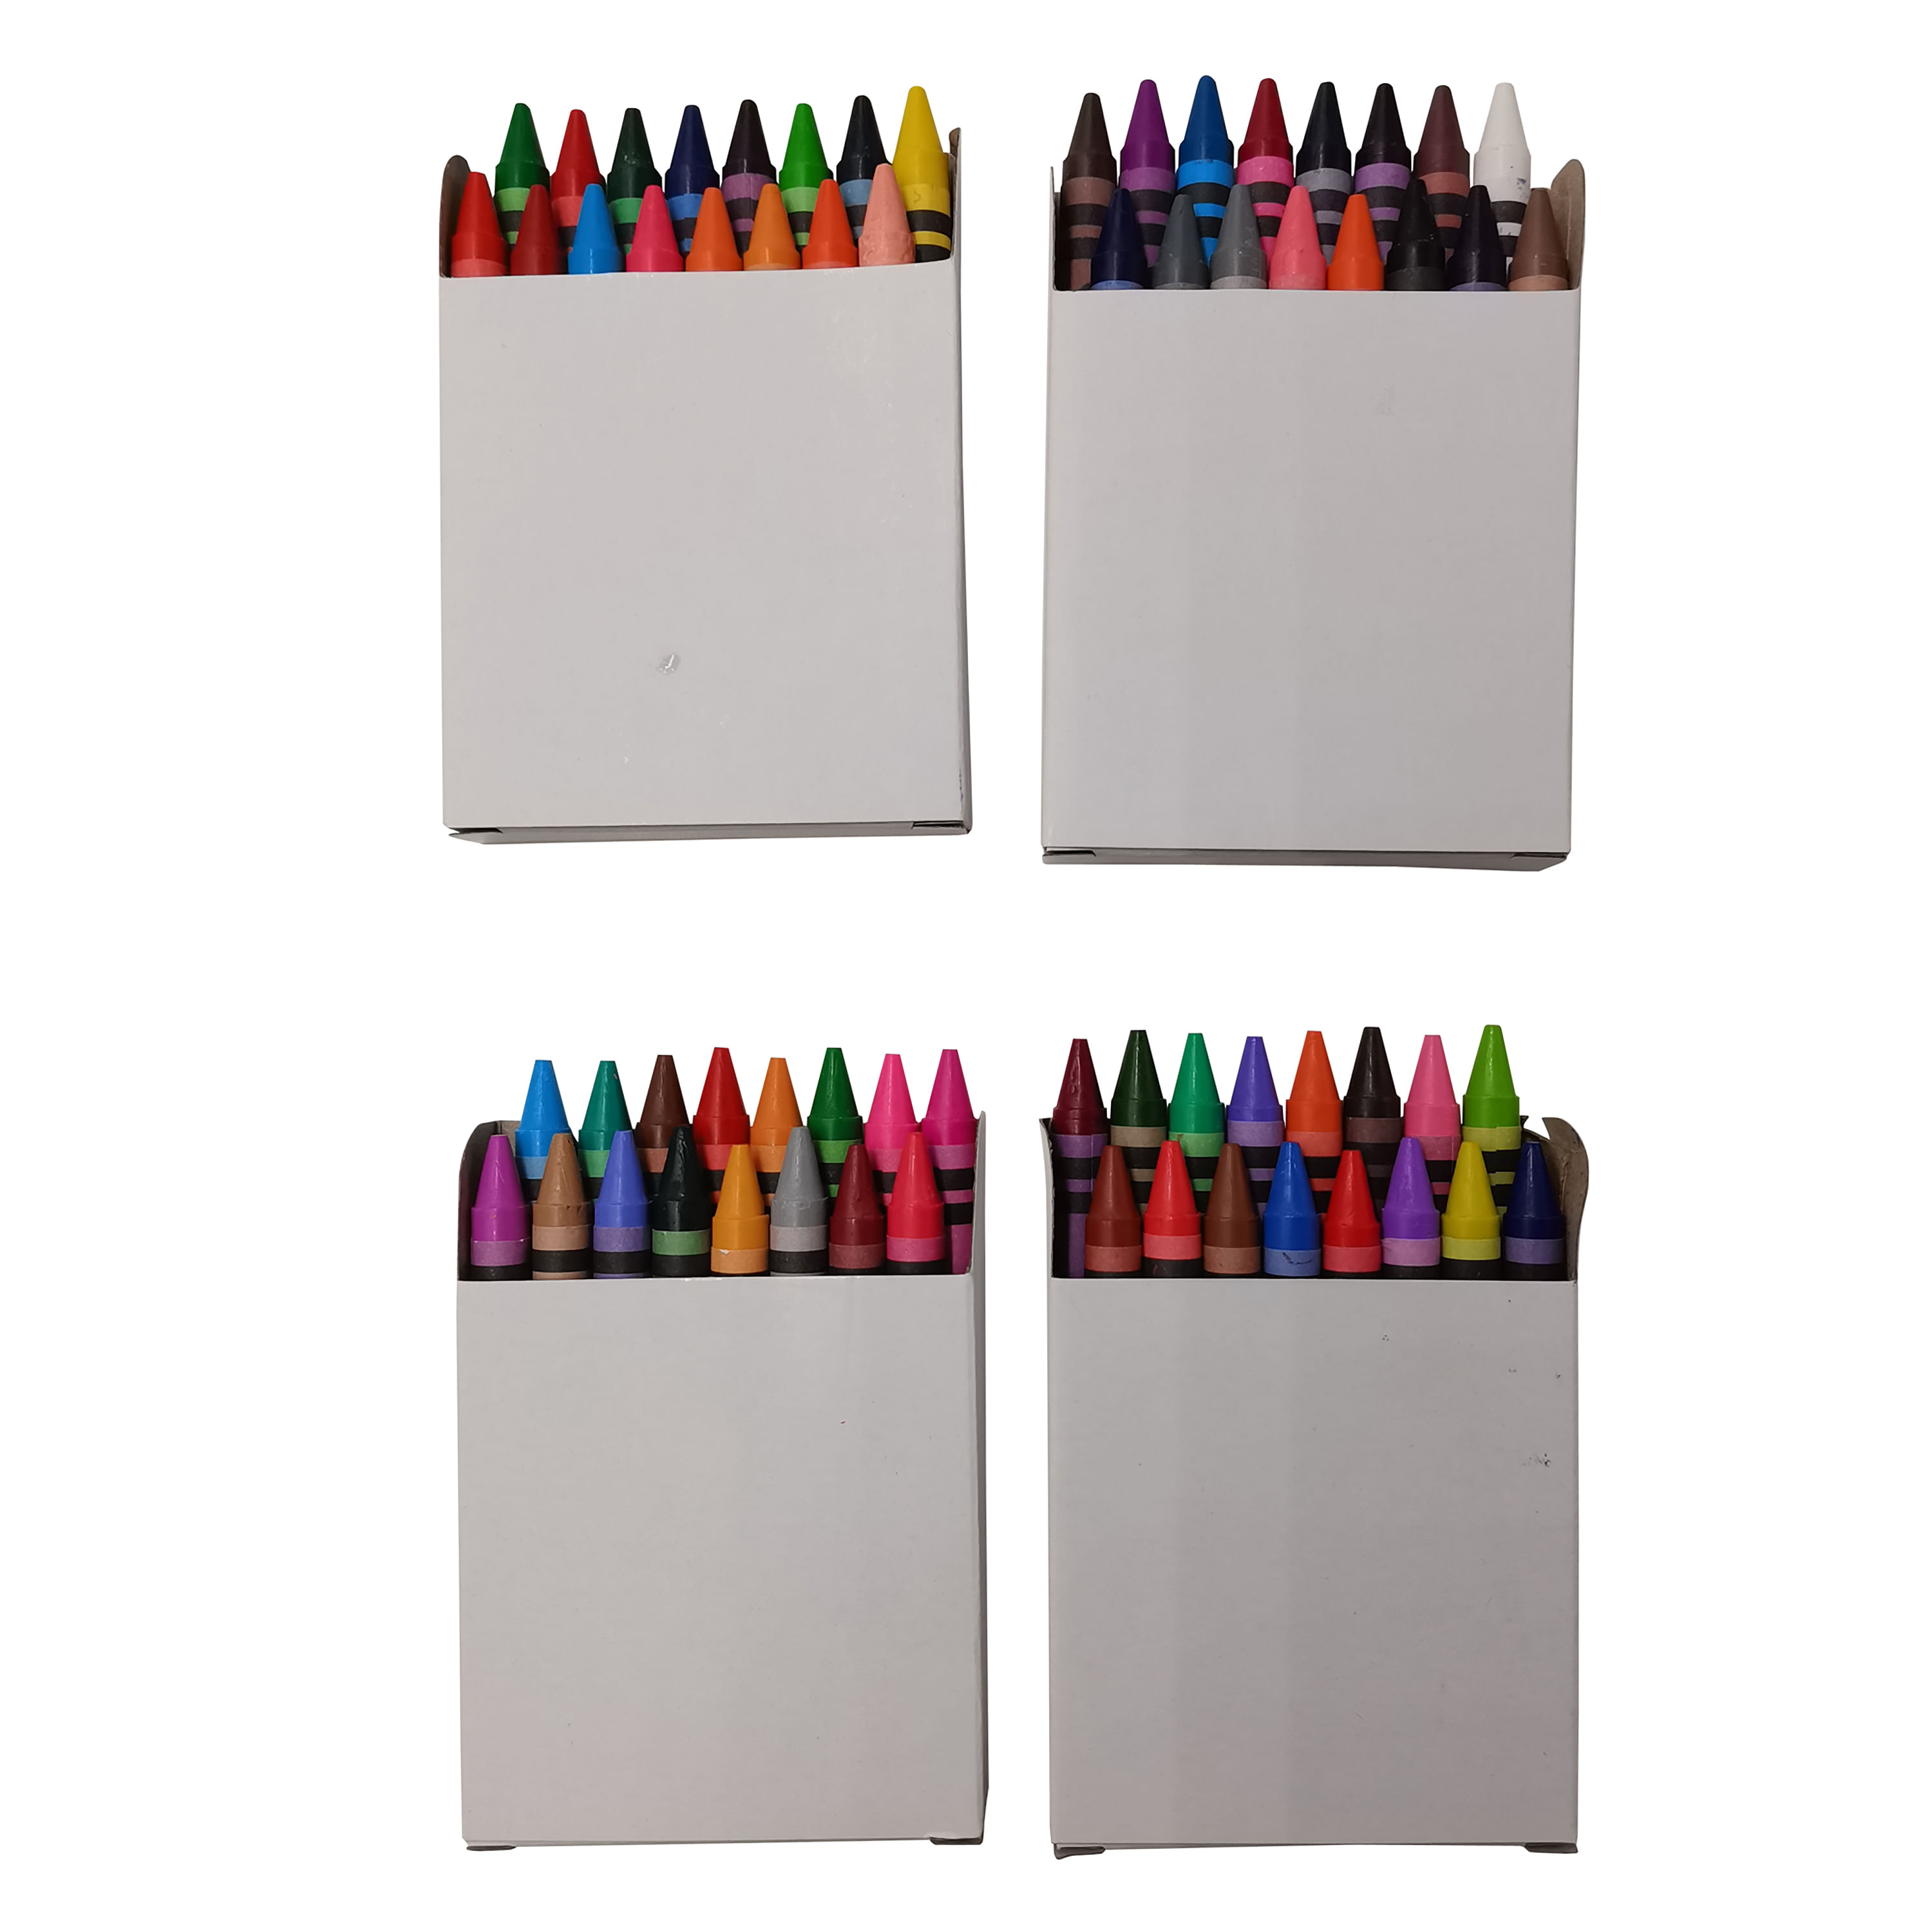 https://walmarthn.vtexassets.com/arquivos/ids/286152/Caja-de-crayones-marca-Pen-Gear-infantiles-con-sacapuntas-incluido-64-Uds-1-27326.jpg?v=638157237198800000